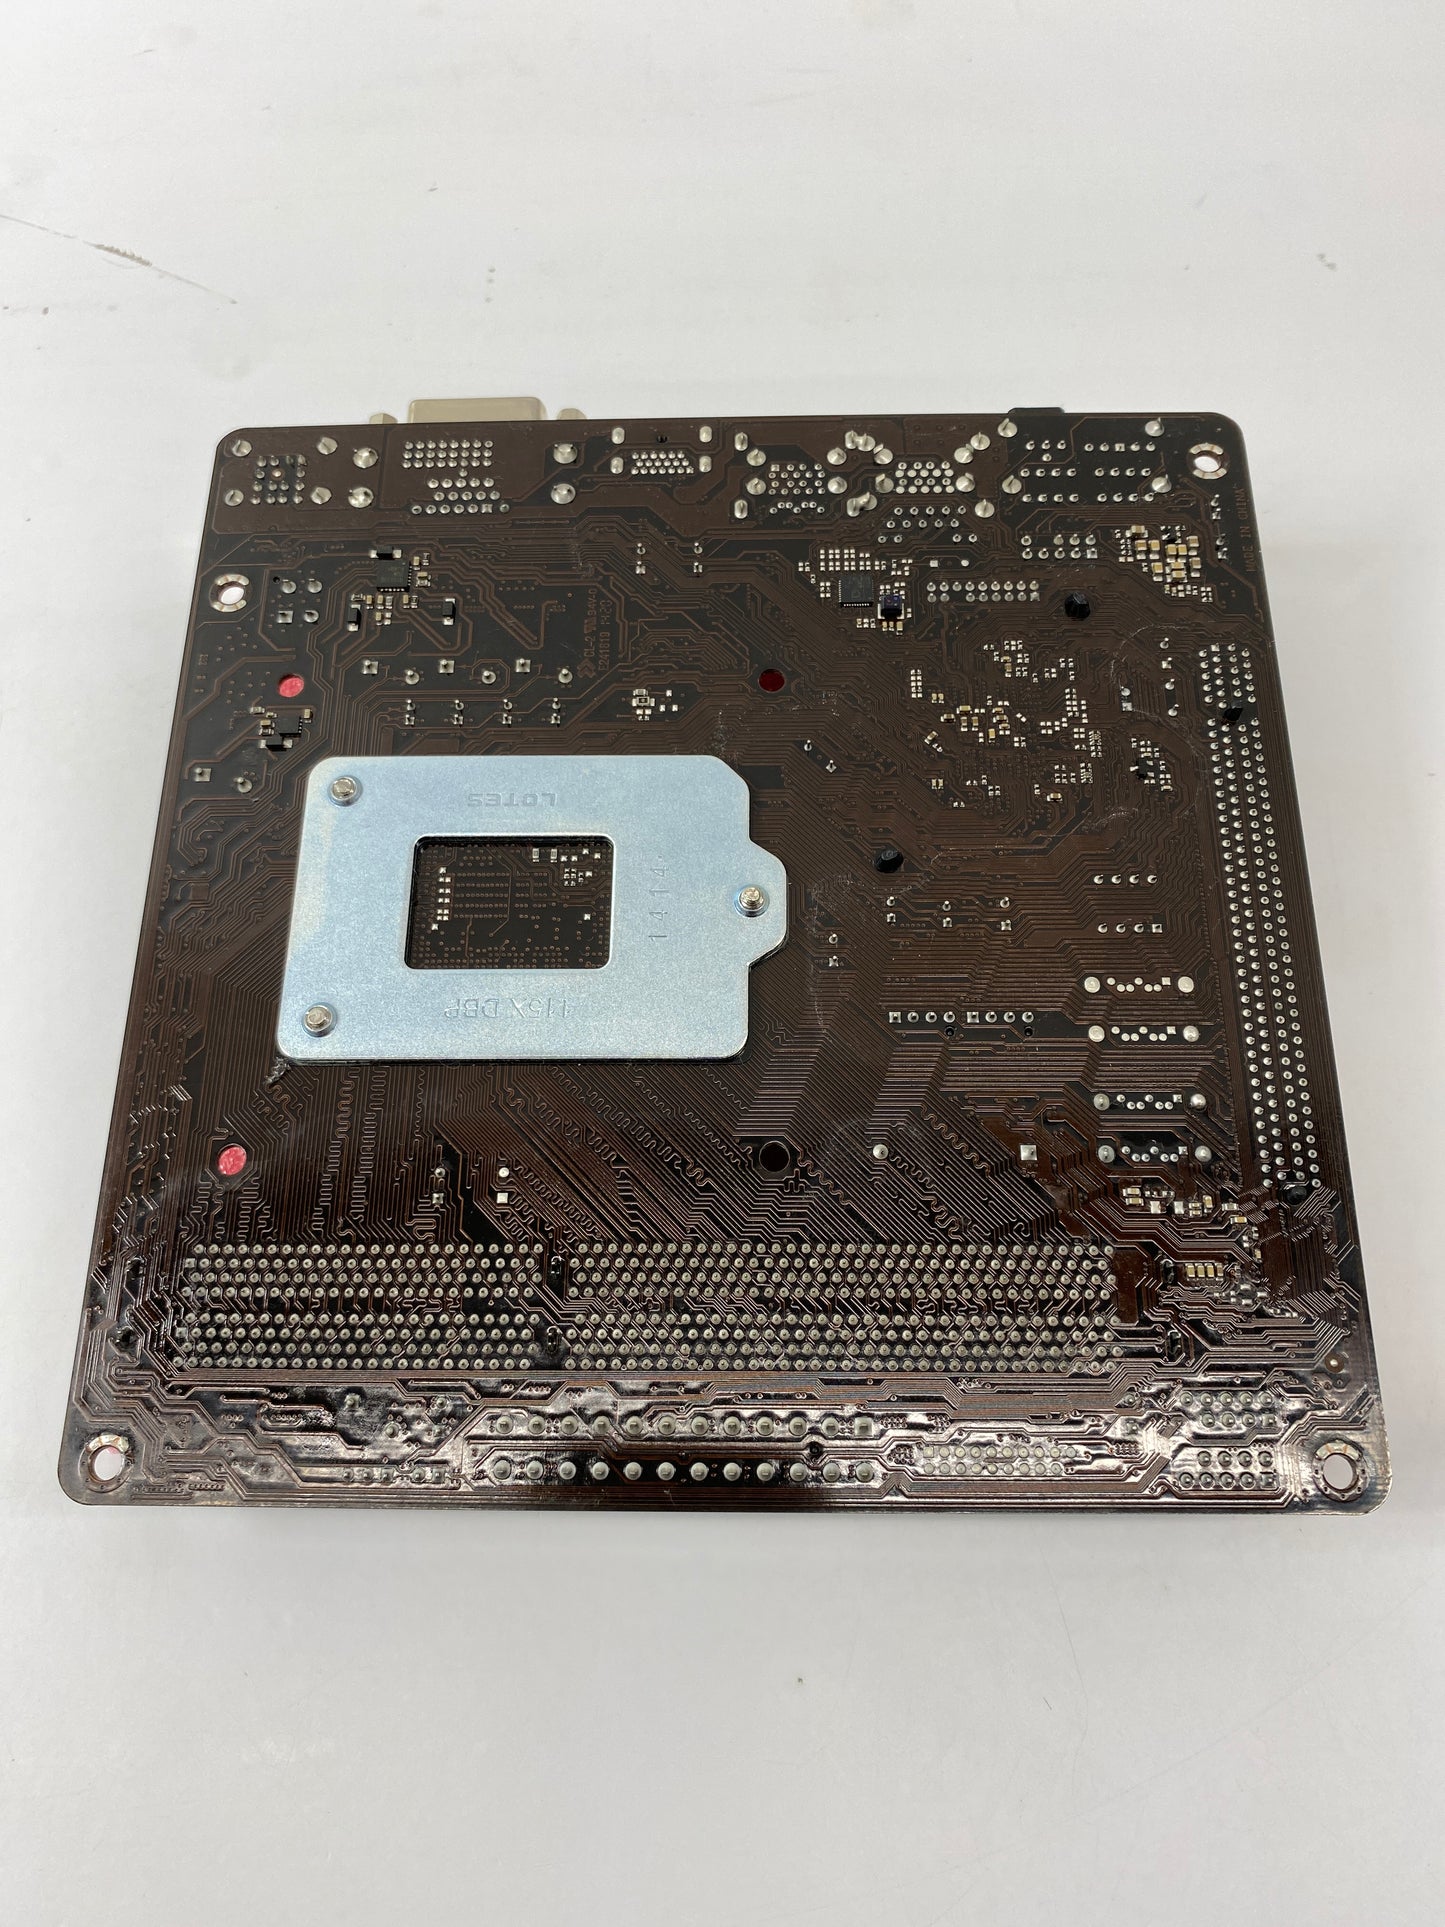 New ASRock H81M-ITX LGA 1150 Mini-ITX DDR3 PCIe 2.0 x16 Motherboard